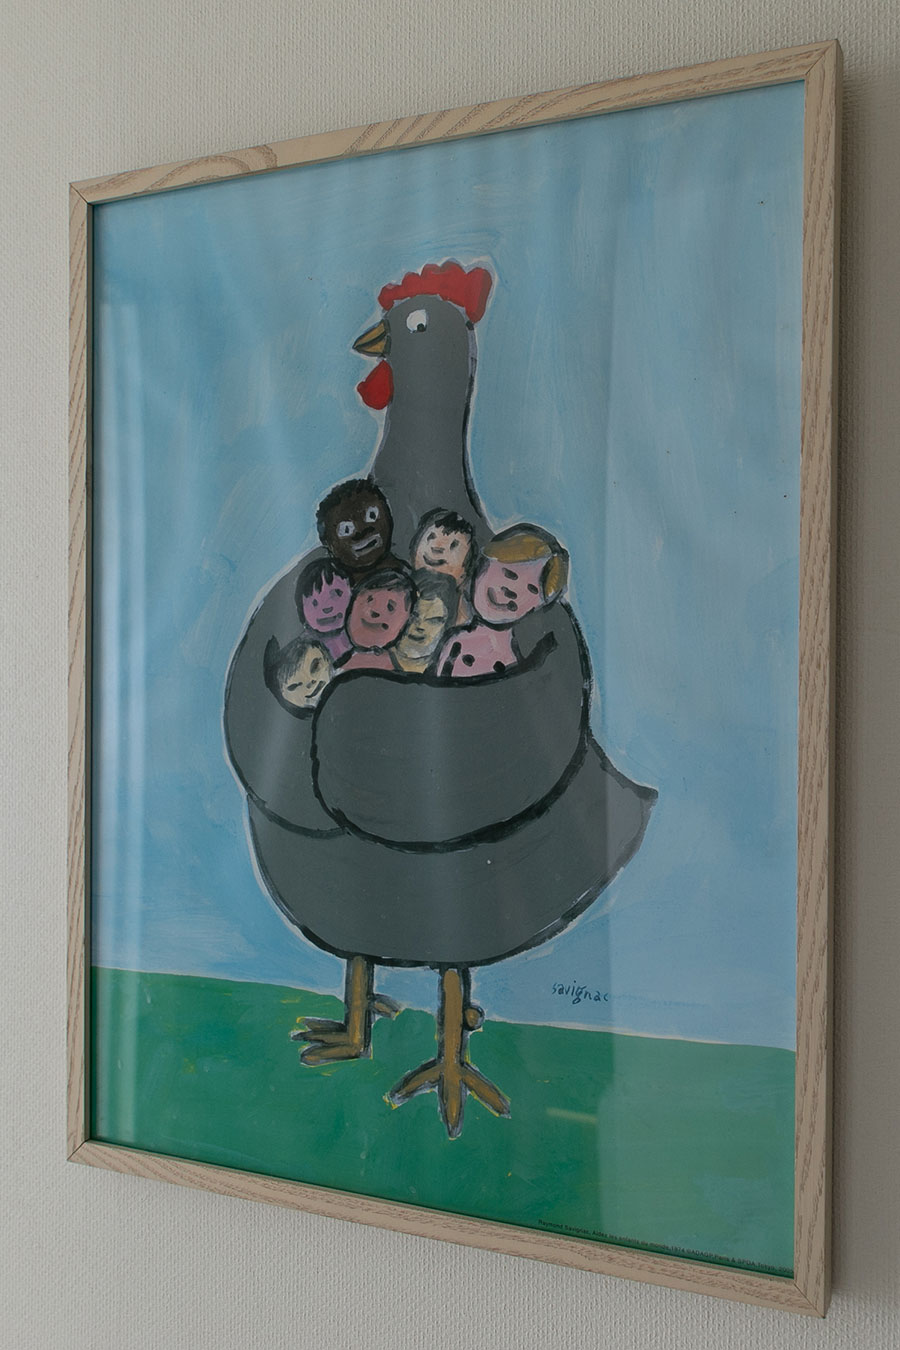 フランスの画家・サヴィニャックのポスター。「にわとりが、家族を守る夫にどことなく似ていて、とても気に入っています」（まきさん）。